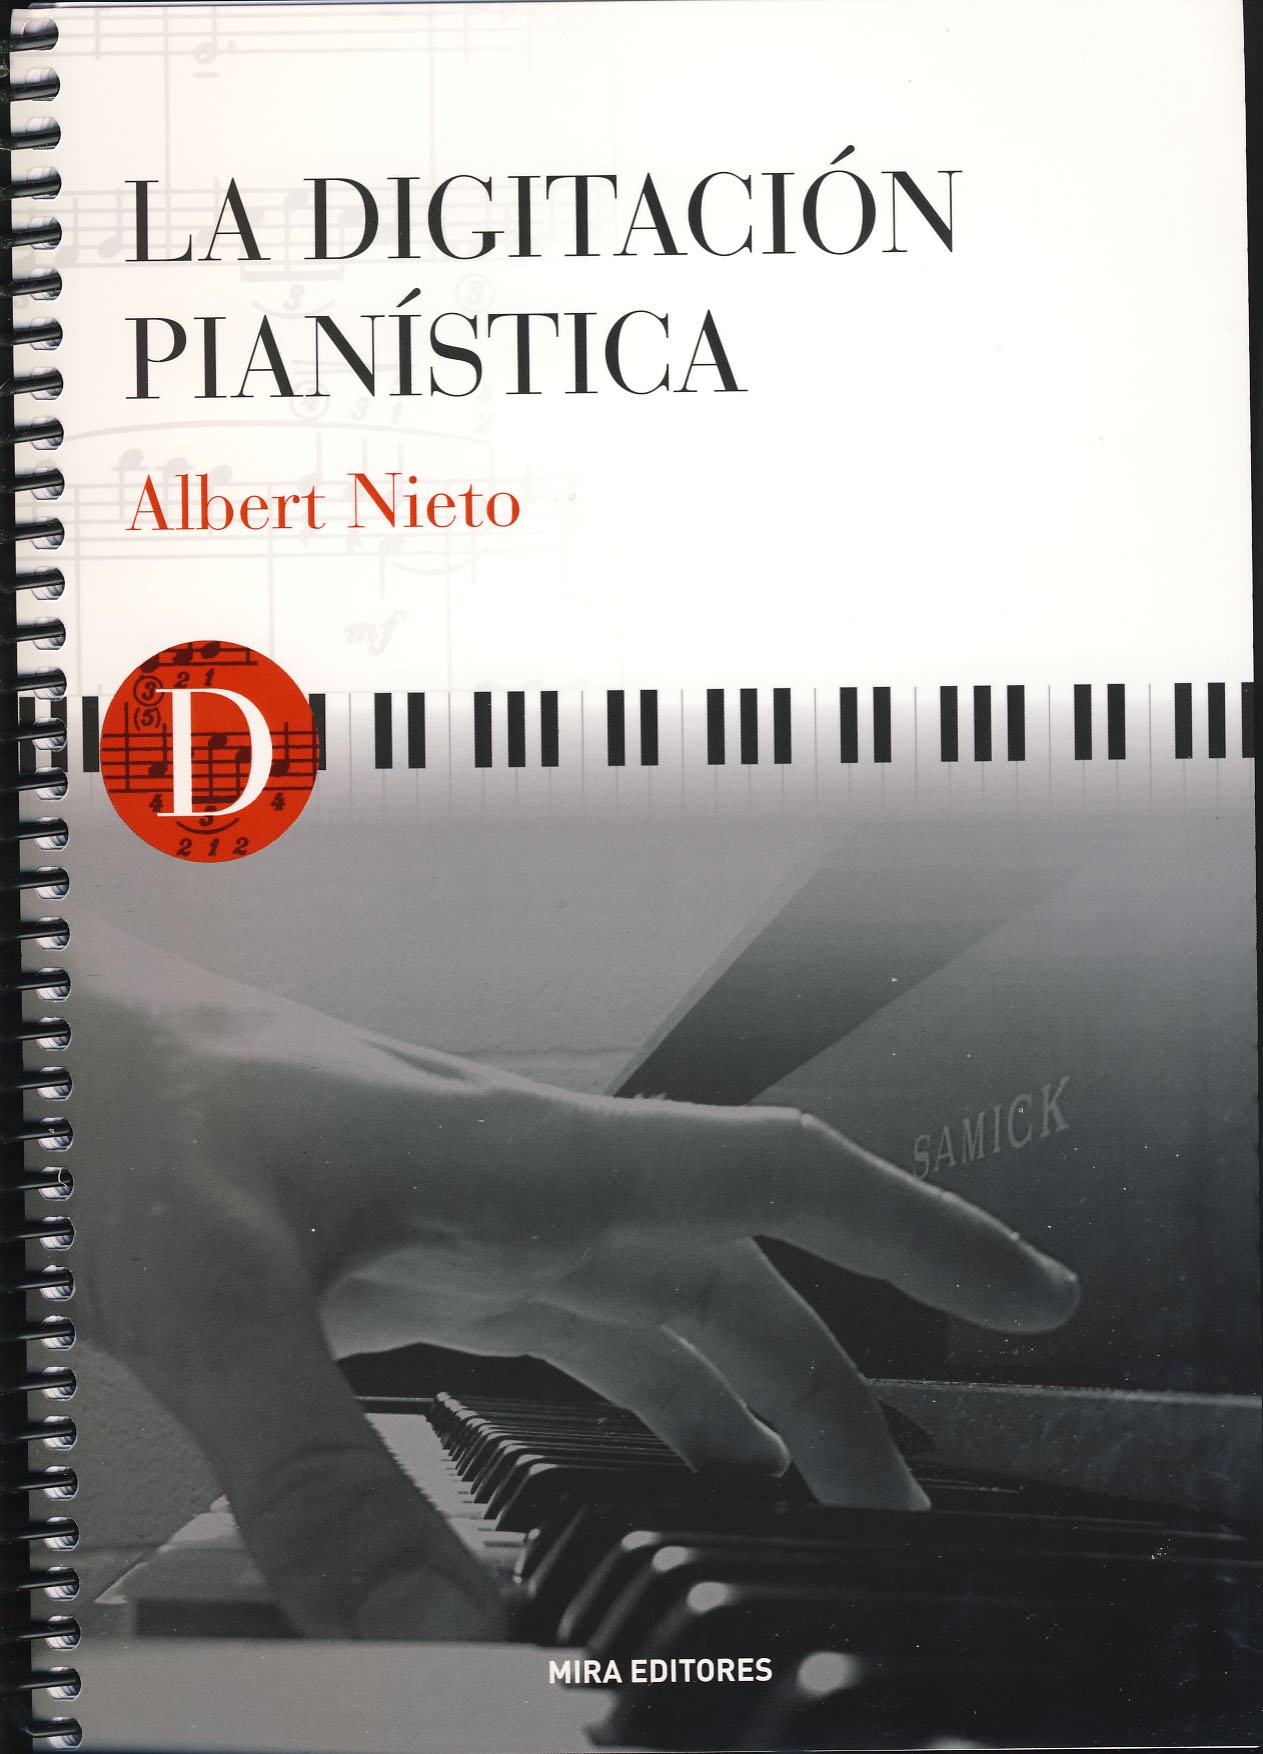 La Digitación Pianística. Albert Nieto